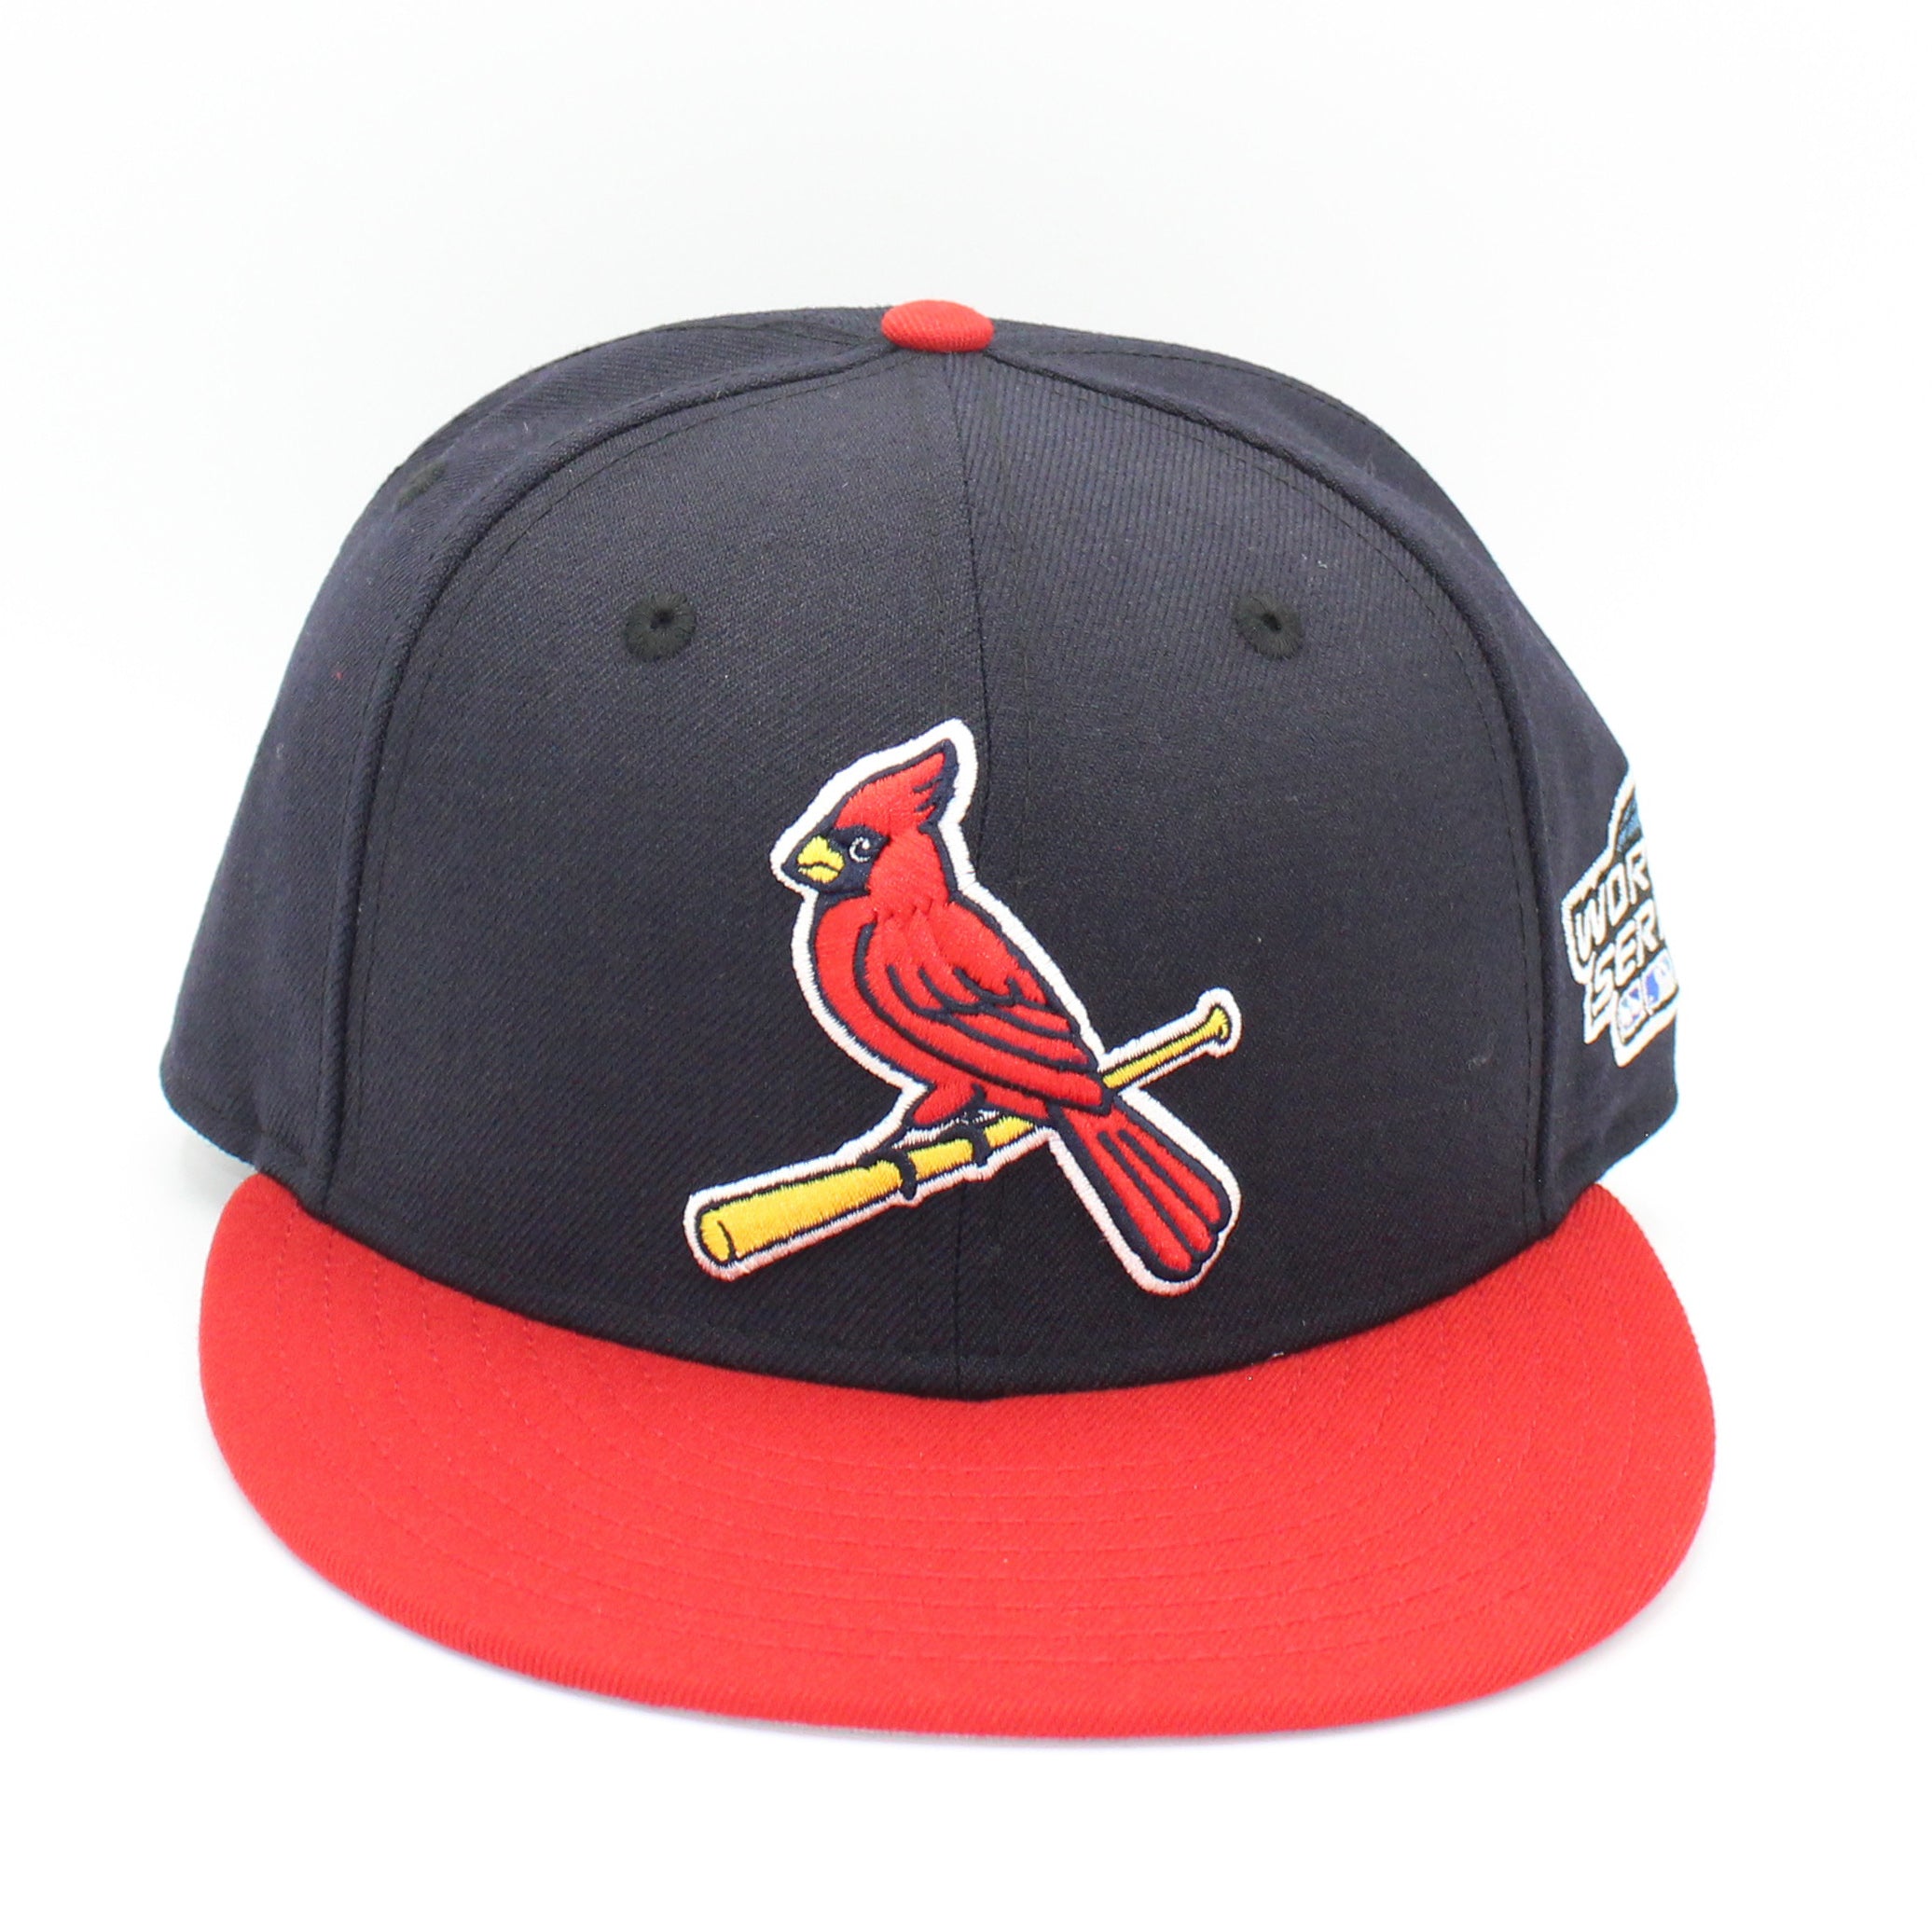 Men's St. Louis Cardinals Hats